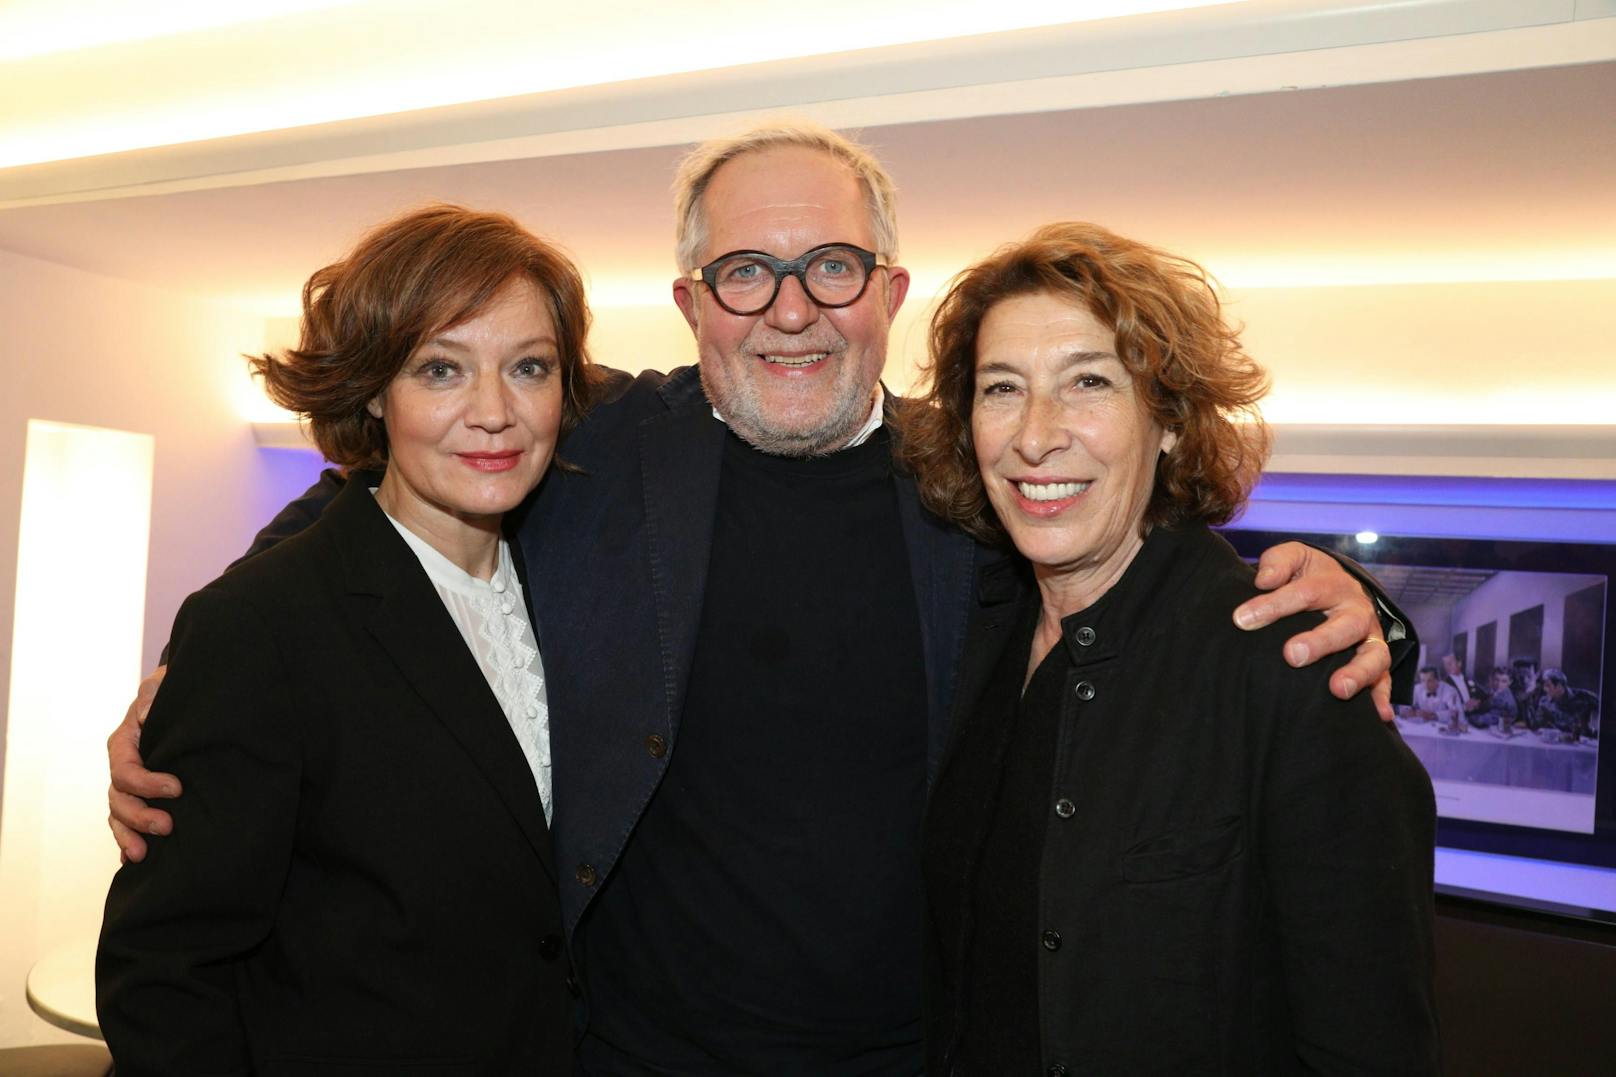 Marion Mitterhammer, Harald Krassnitzer und Adele Neuhauser bei der Kinopremiere von "Taktik" in Wien